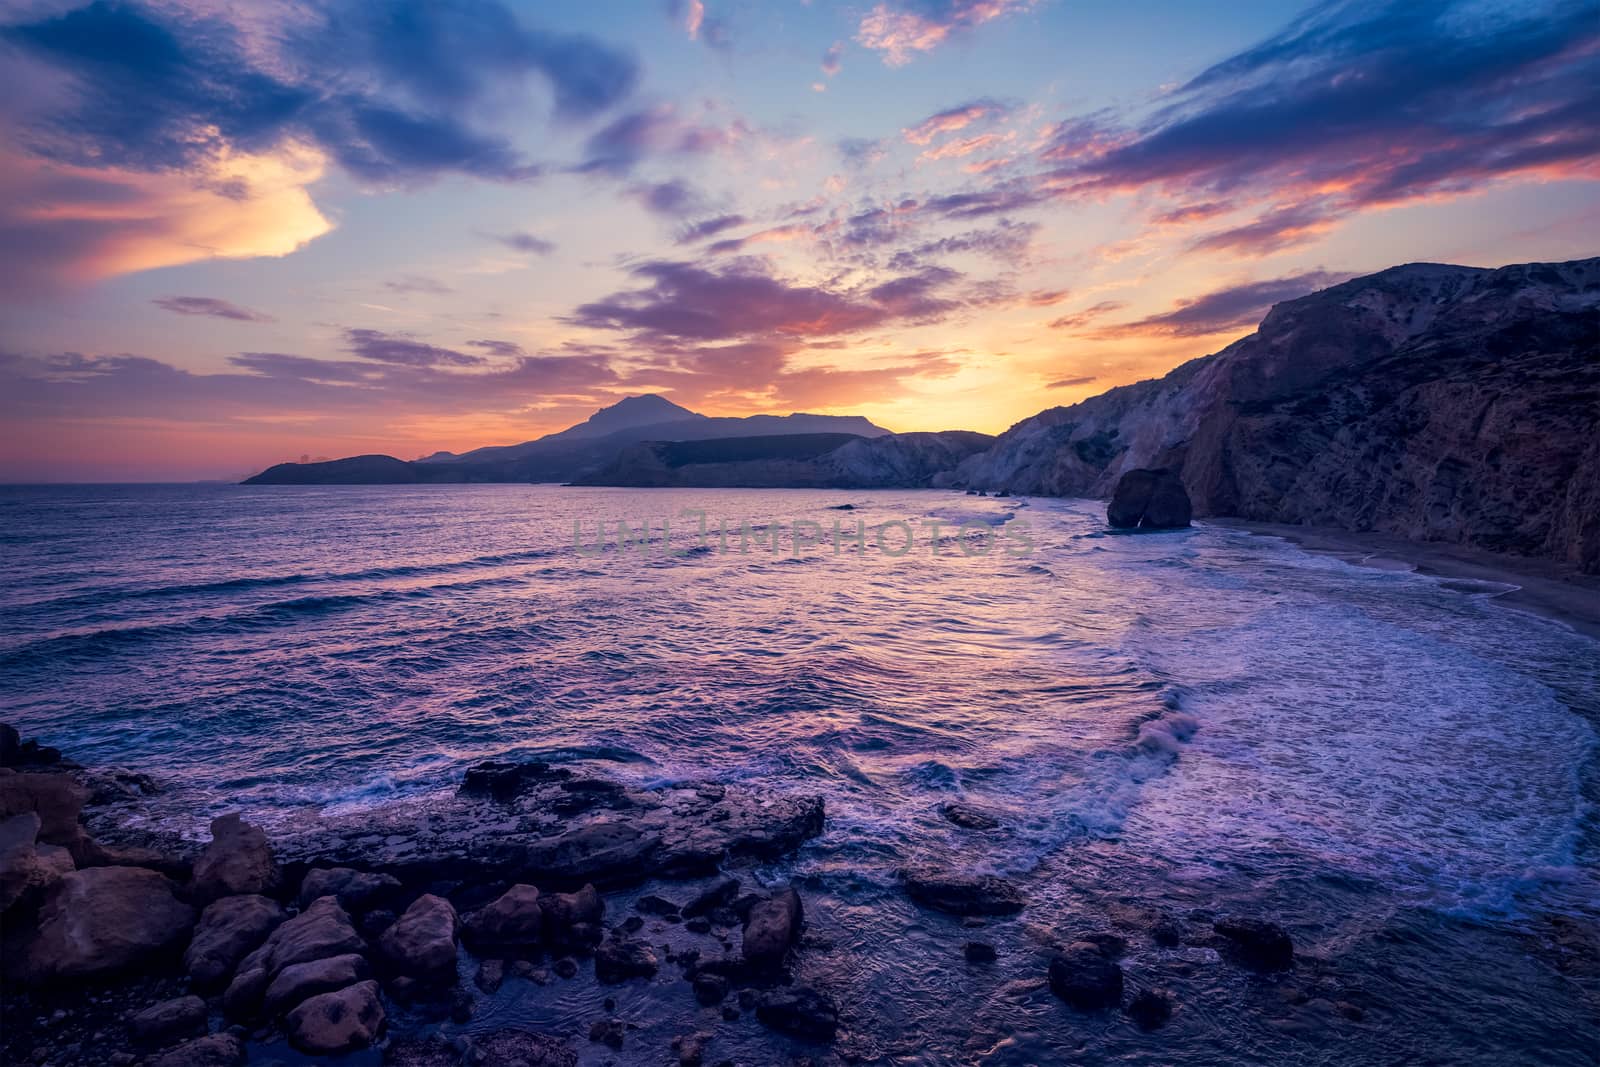 Fyriplaka beach on sunset, Milos island, Cyclades, Greece by dimol